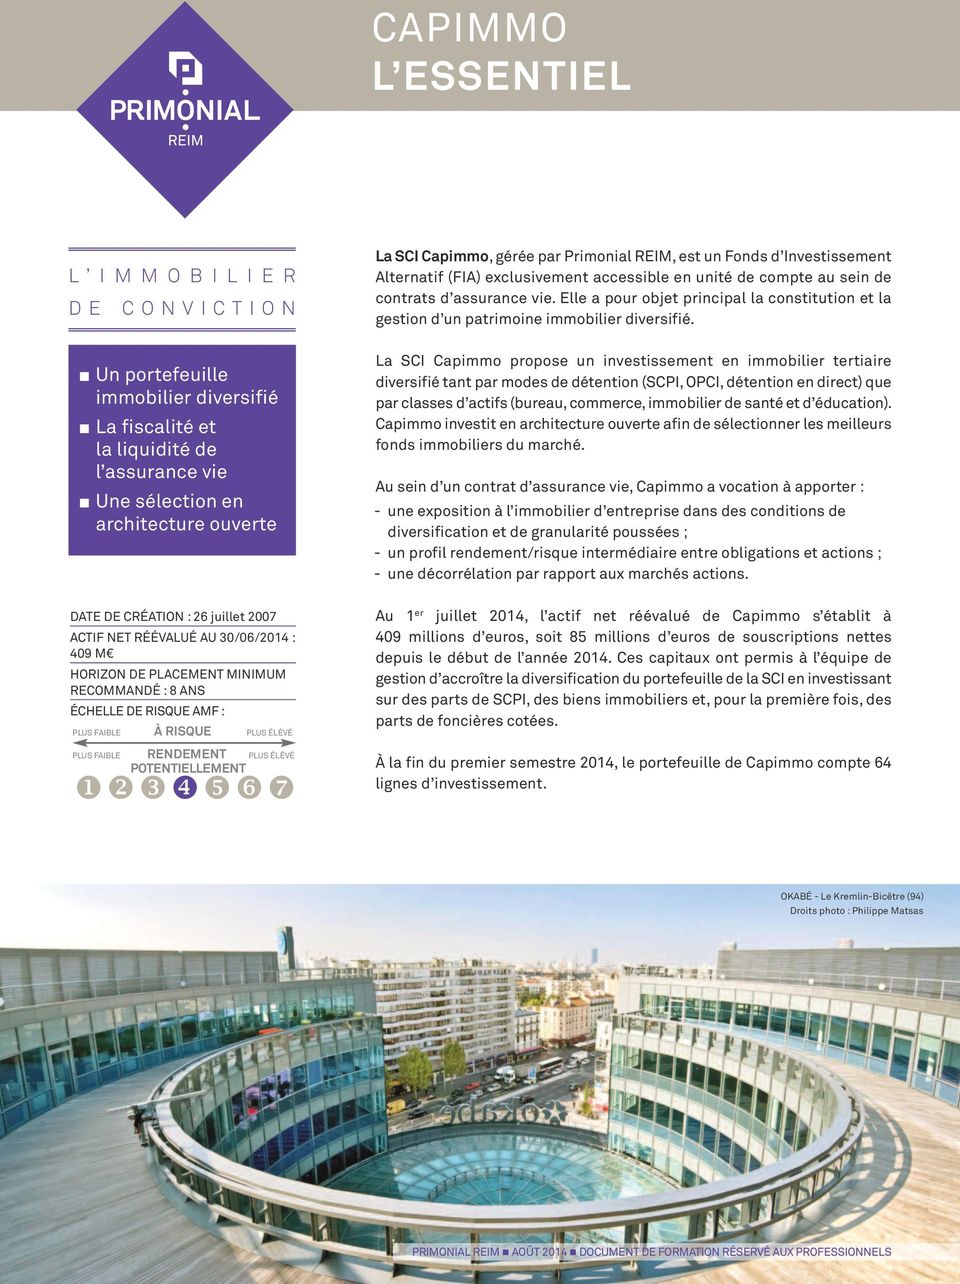 ÉLÉVÉ POTENTIELLEMENT La SCI Capimmo, gérée par Primonial REIM, est un Fonds d Investissement Alternatif (FIA) exclusivement accessible en unité de compte au sein de contrats d assurance vie.